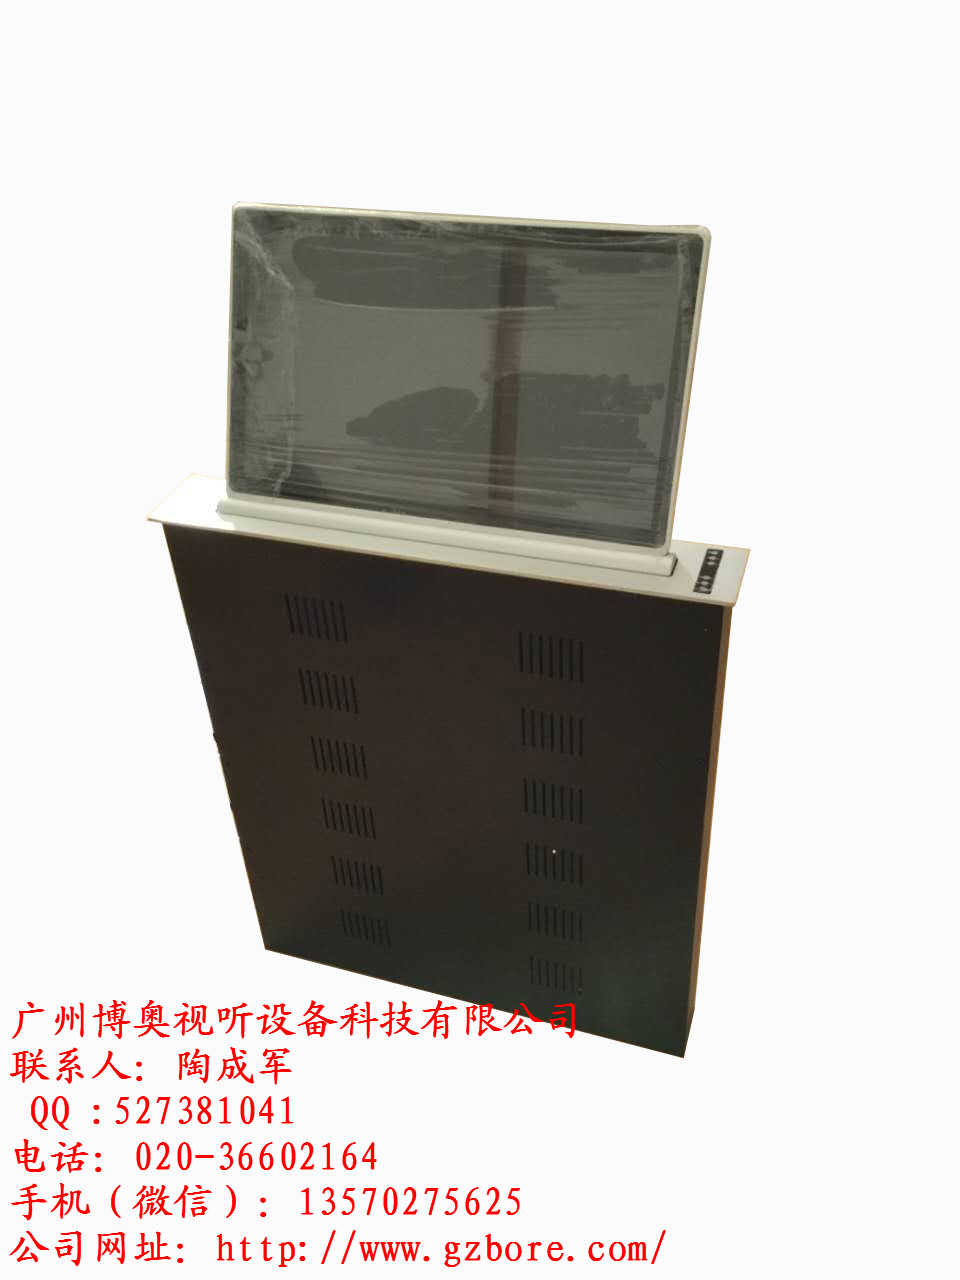 博奥液晶屏升降器|广州博奥超薄液晶屏升降器厂家电动液晶屏升降机厂家